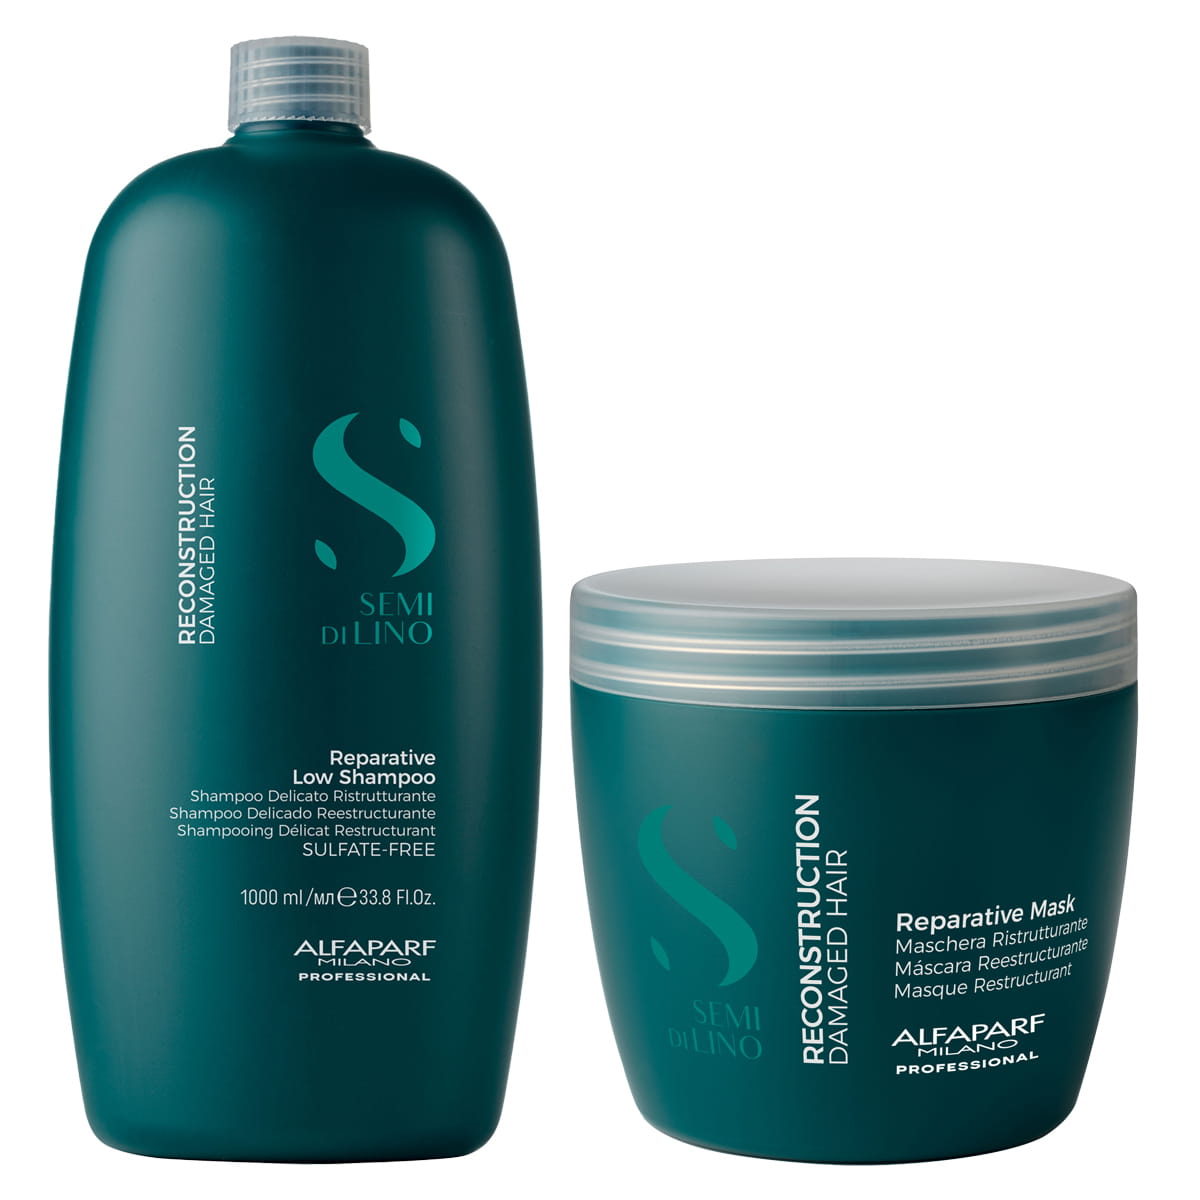 naturalny szampon po keratynowym prostowaniu